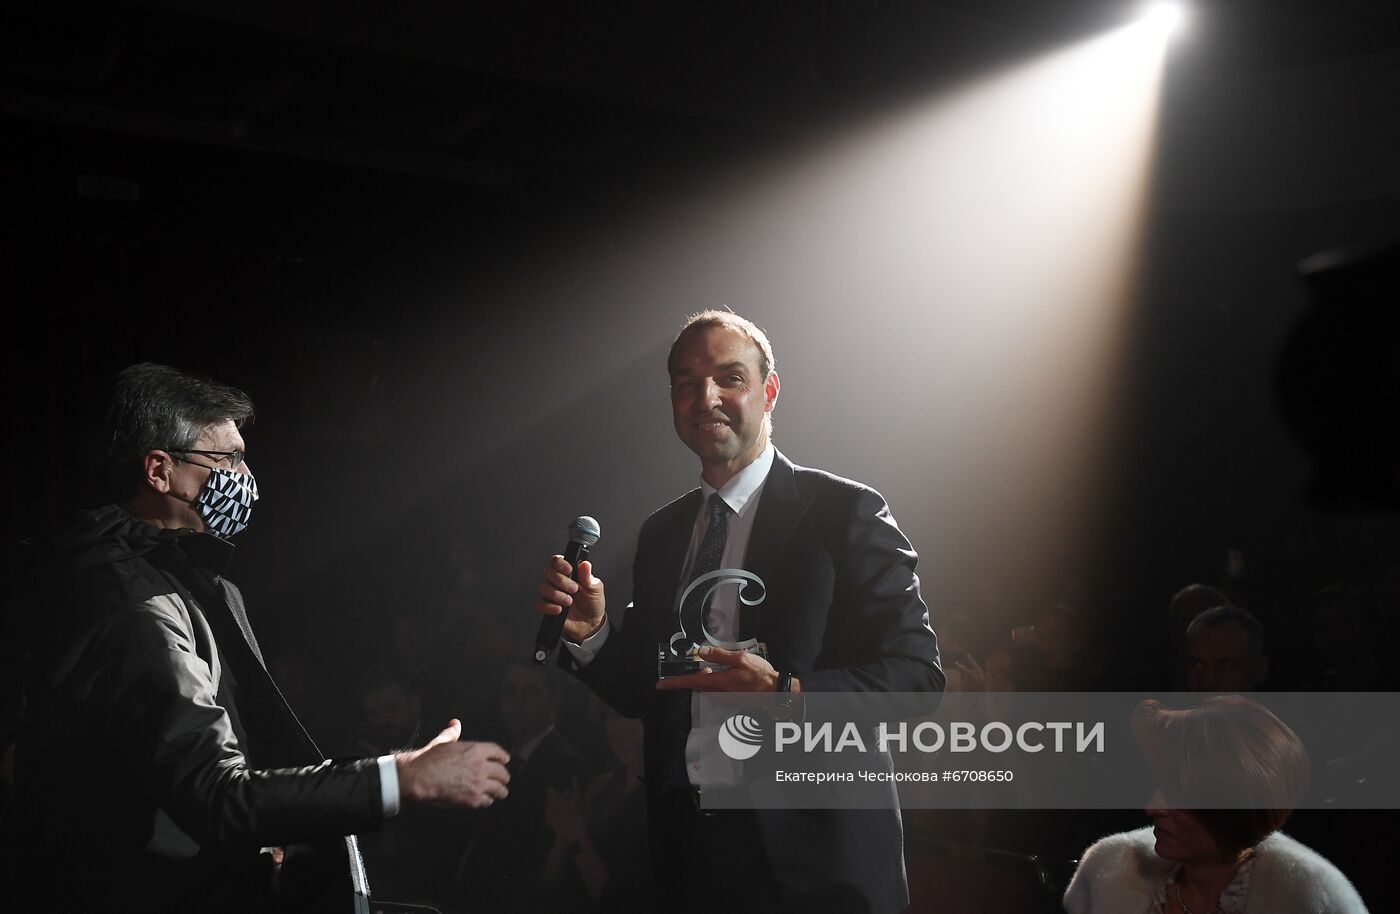 Х юбилейная премия проекта "Сноб" "Сделано в России"